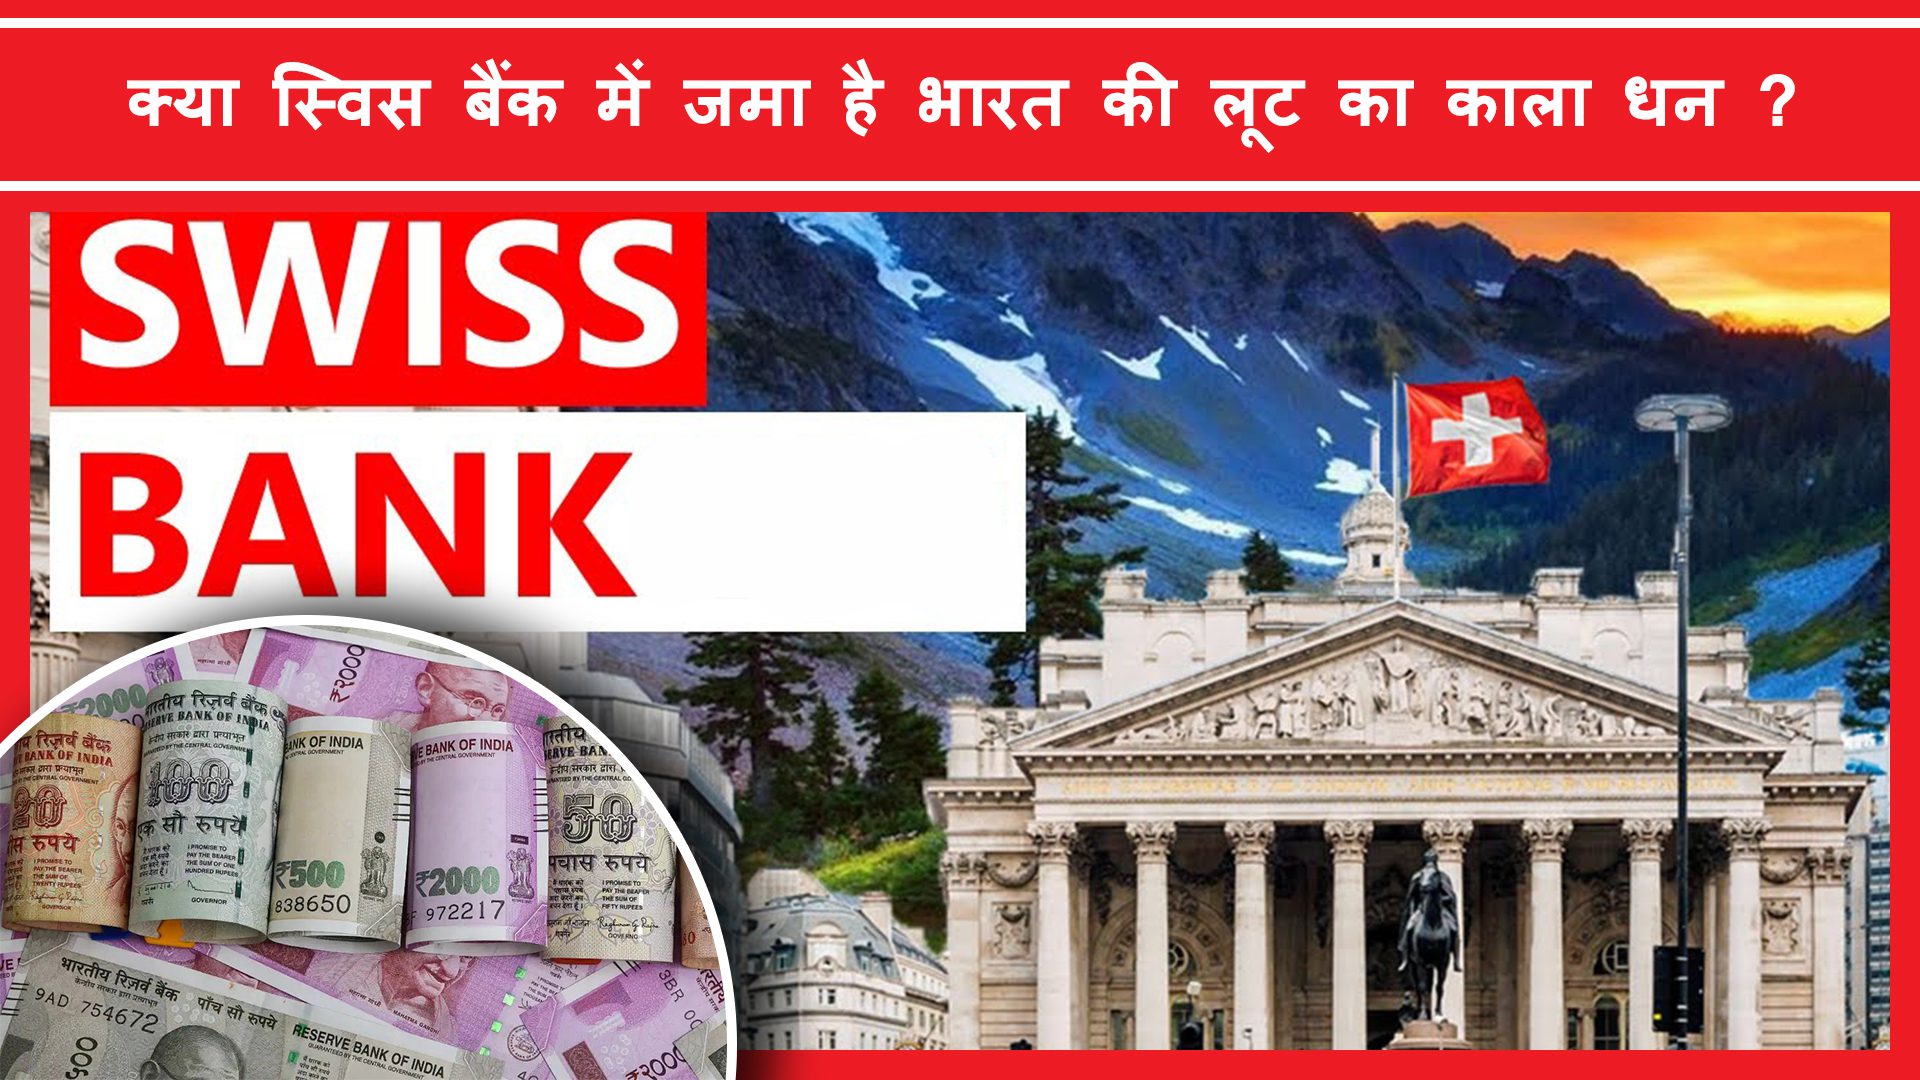 Swiss Bank me bharat ka kitna dhan padha hai